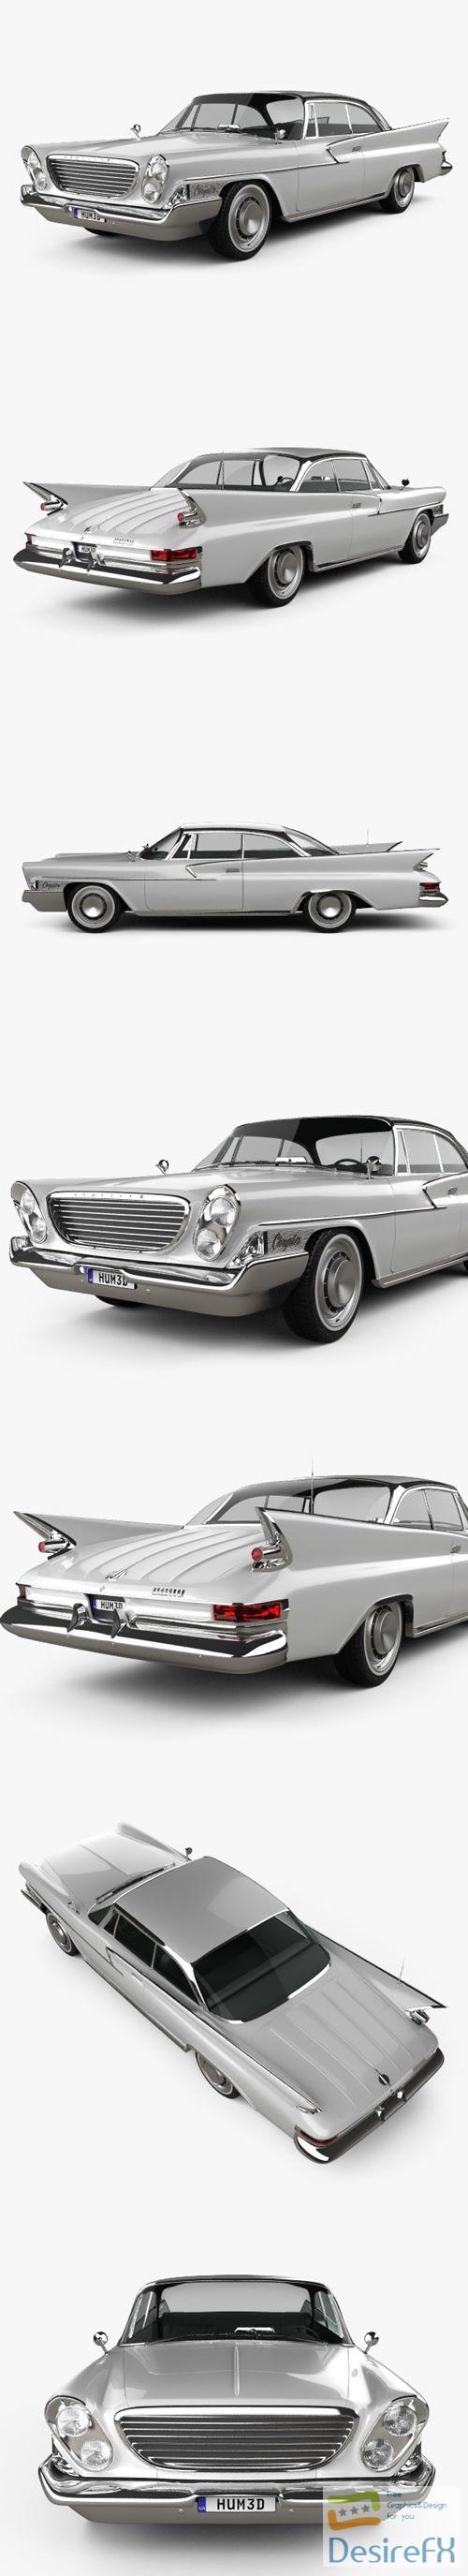 Chrysler Newport 2-door hardtop 1961 3D Model